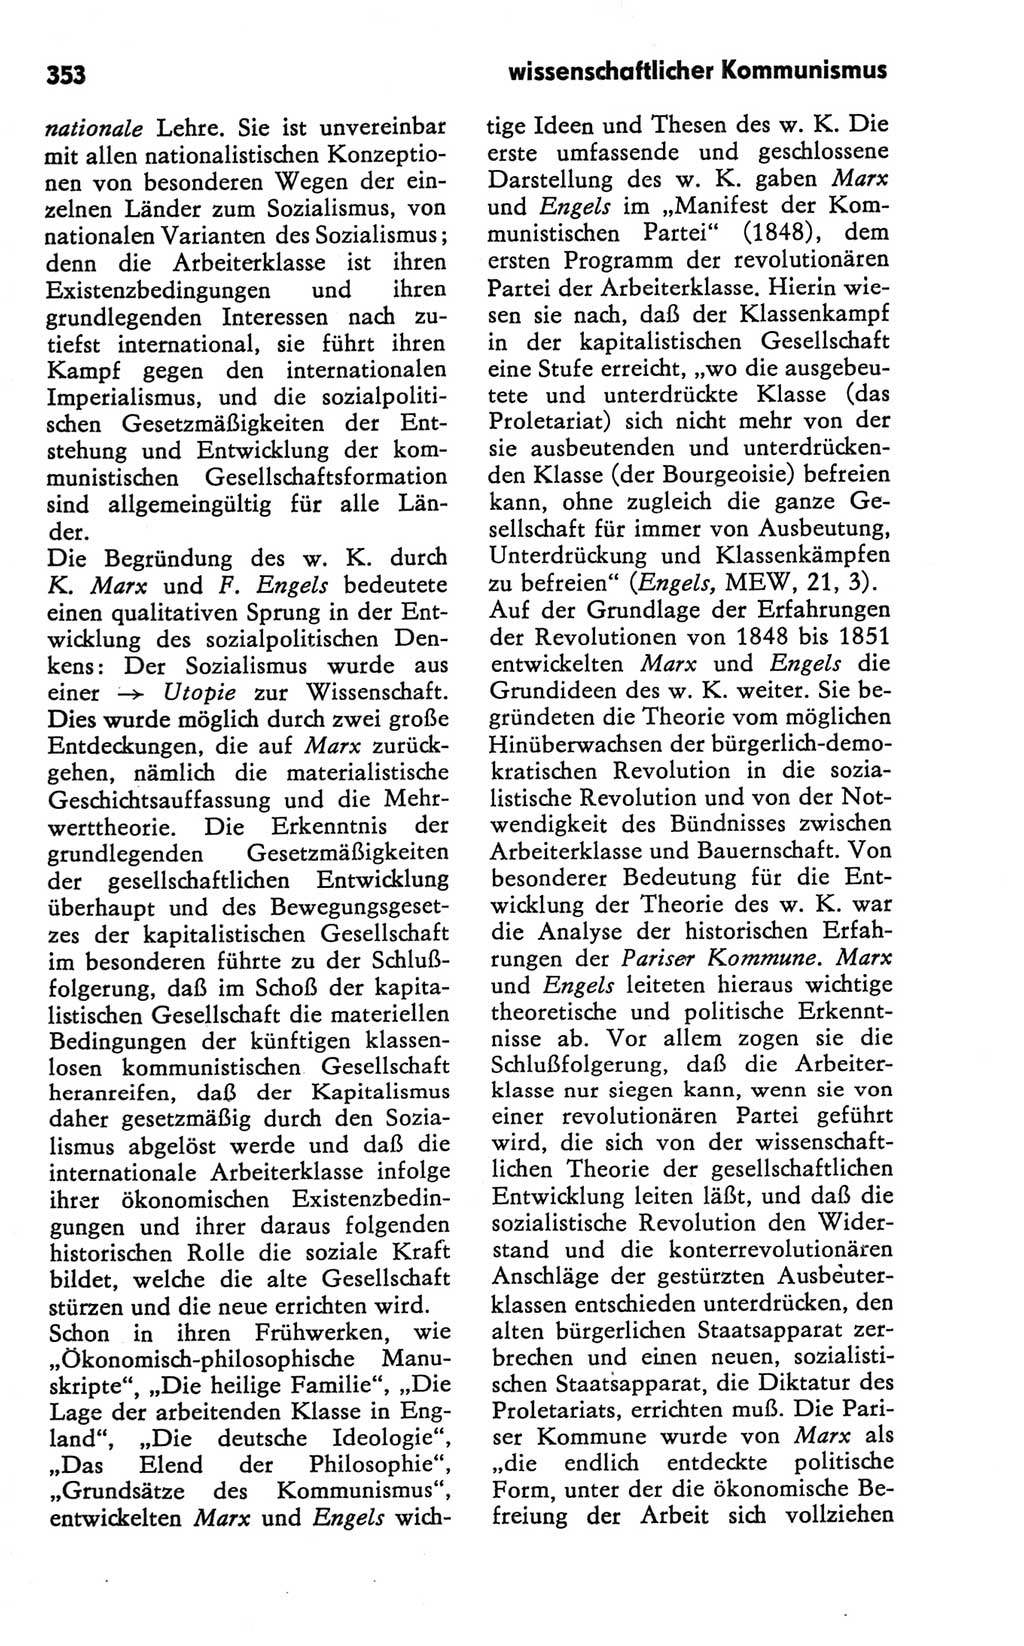 Kleines Wörterbuch der marxistisch-leninistischen Philosophie [Deutsche Demokratische Republik (DDR)] 1981, Seite 353 (Kl. Wb. ML Phil. DDR 1981, S. 353)